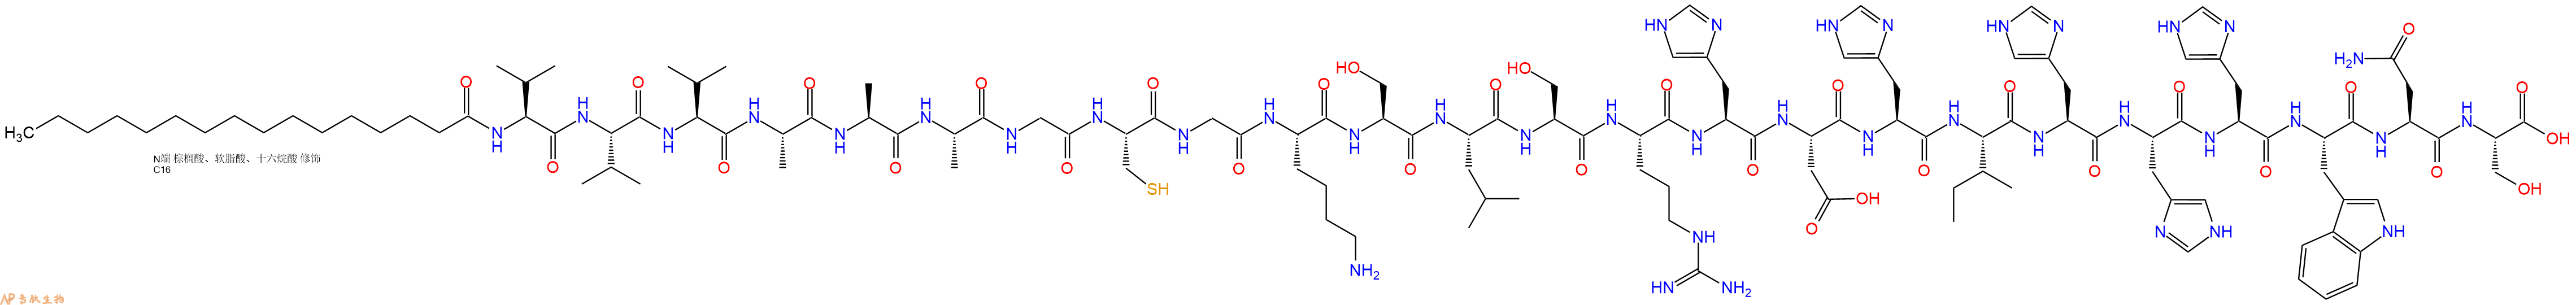 专肽生物产品棕榈酸-VVVAAAGCGKSLSRHDHIHHHWNS